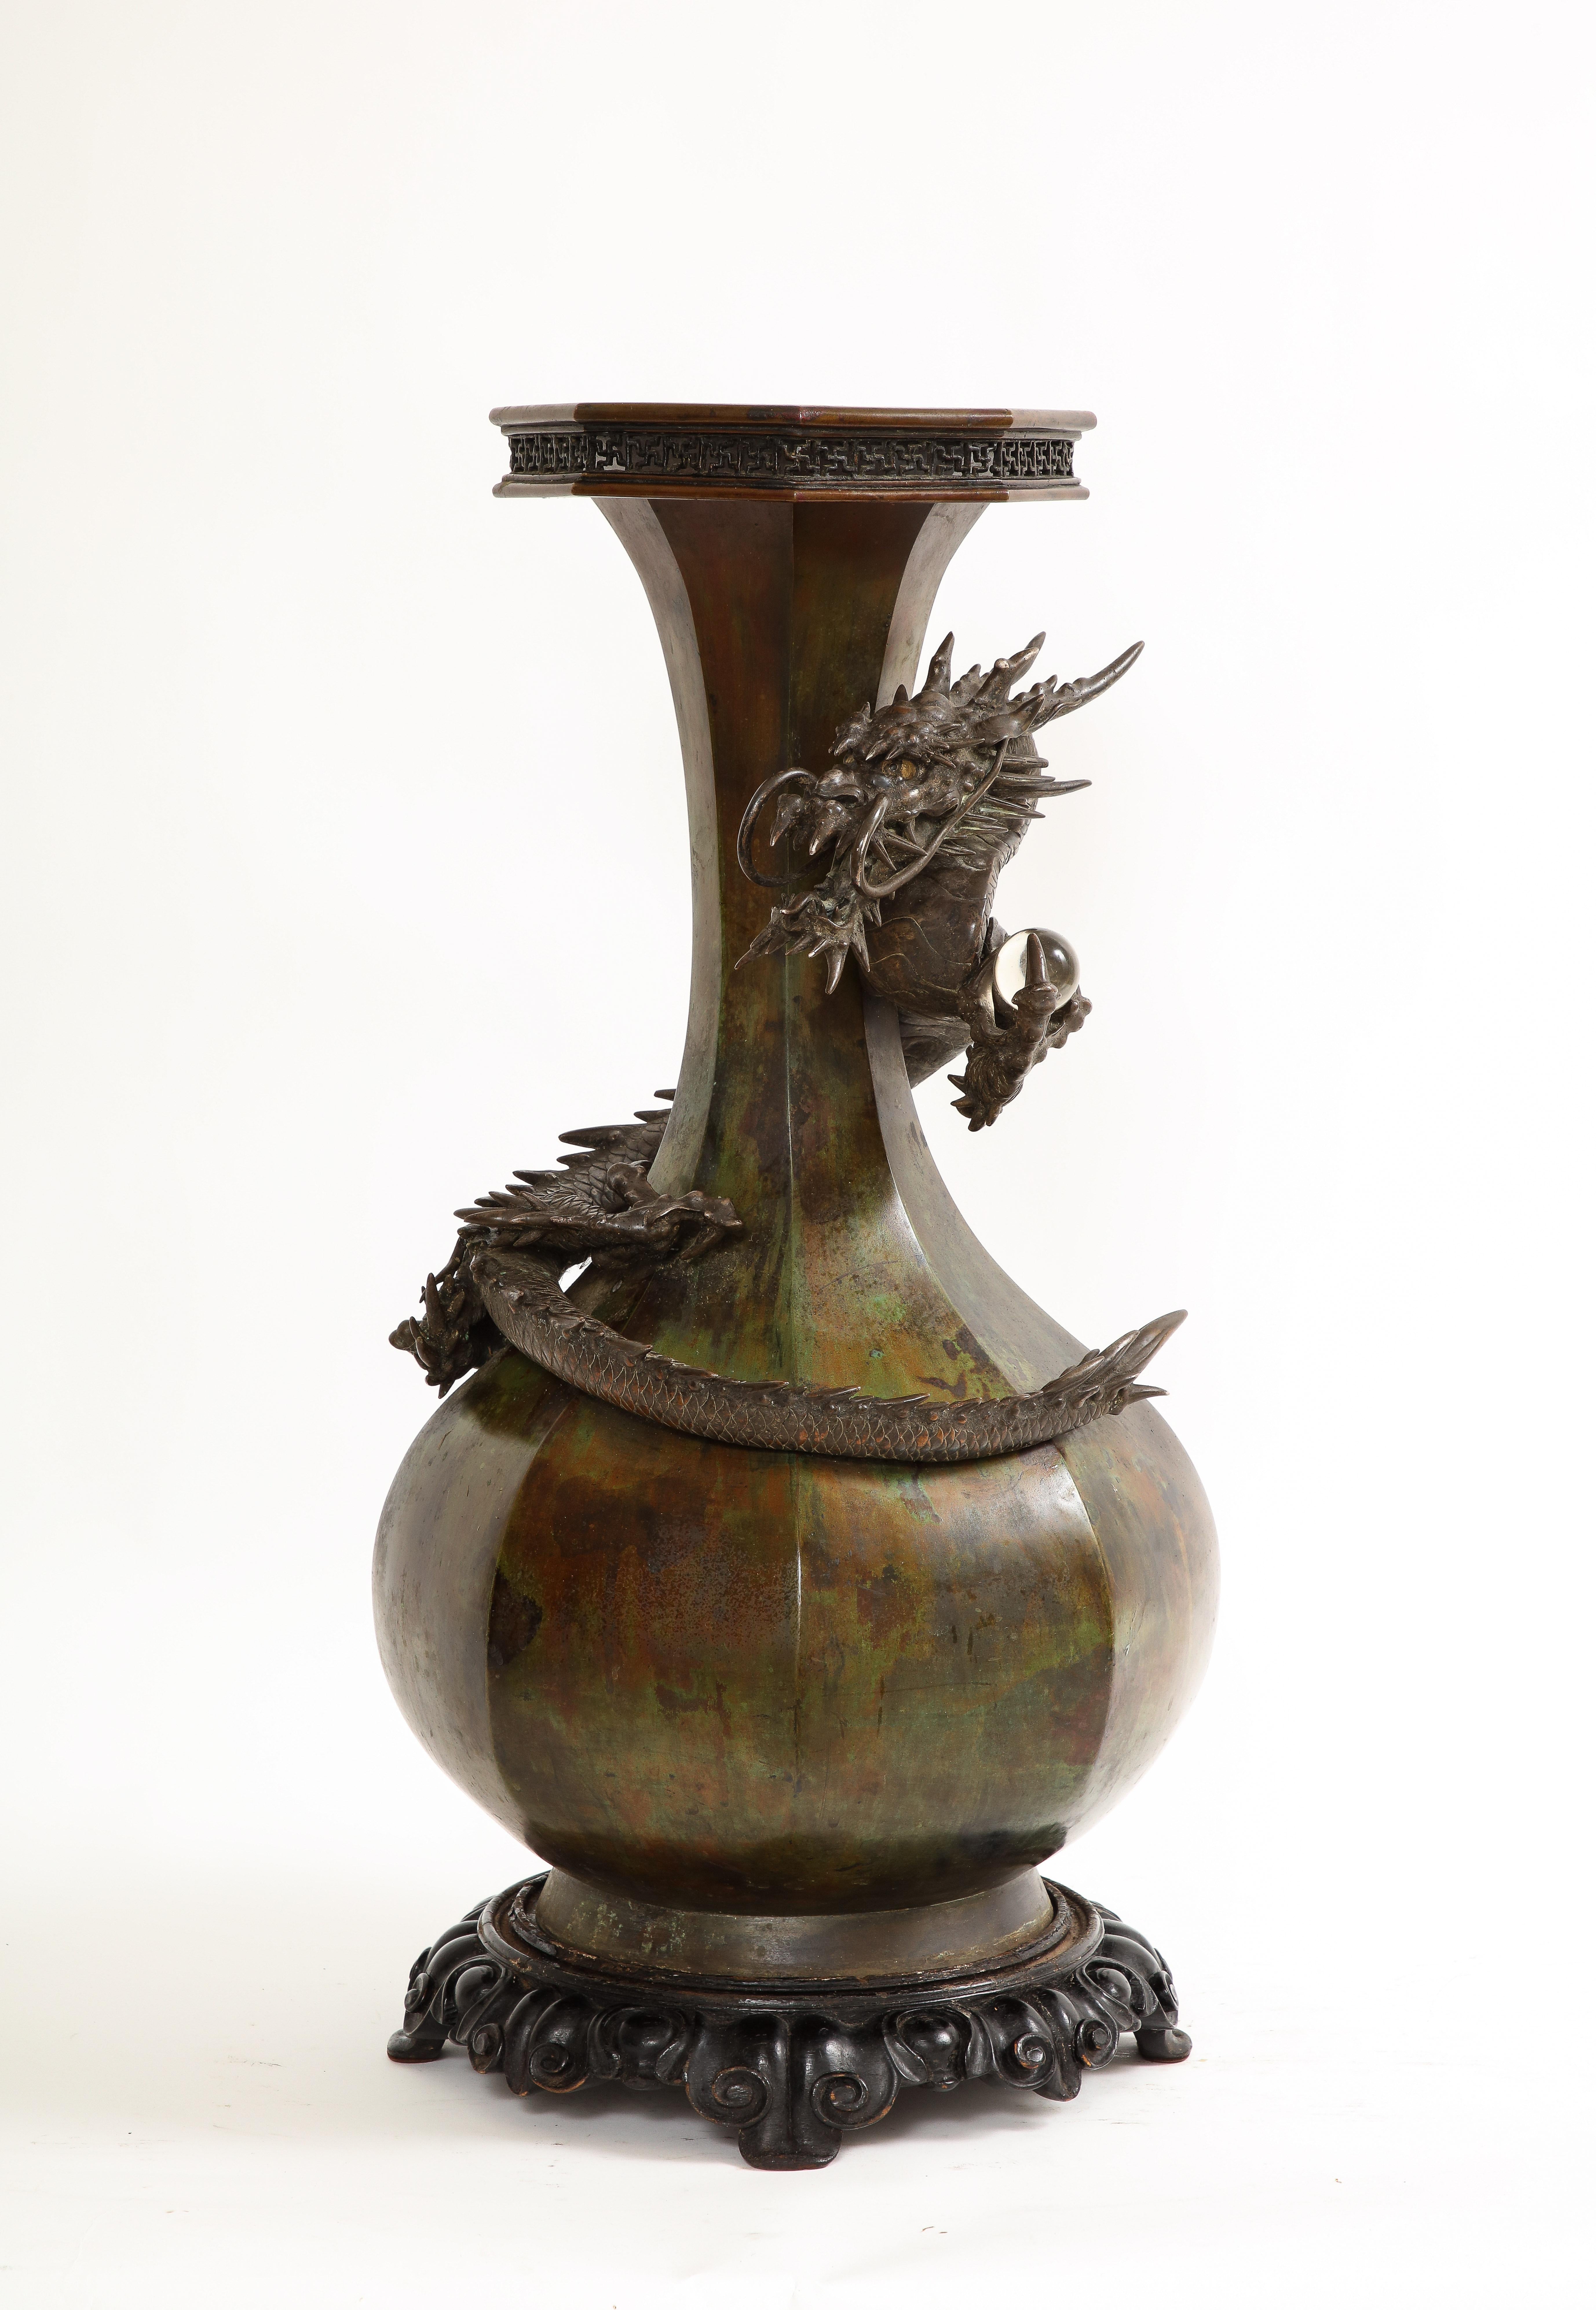 Eine fantastische japanische Meji Periode patiniert Bronze Drache Vase.  Diese Vase ist elegant und beeindruckt durch ihre Größe und Form. Die sehr große Vase ist mit einem Ryu-Drachen umwickelt, der in Hochrelief und mit großer Detailtreue